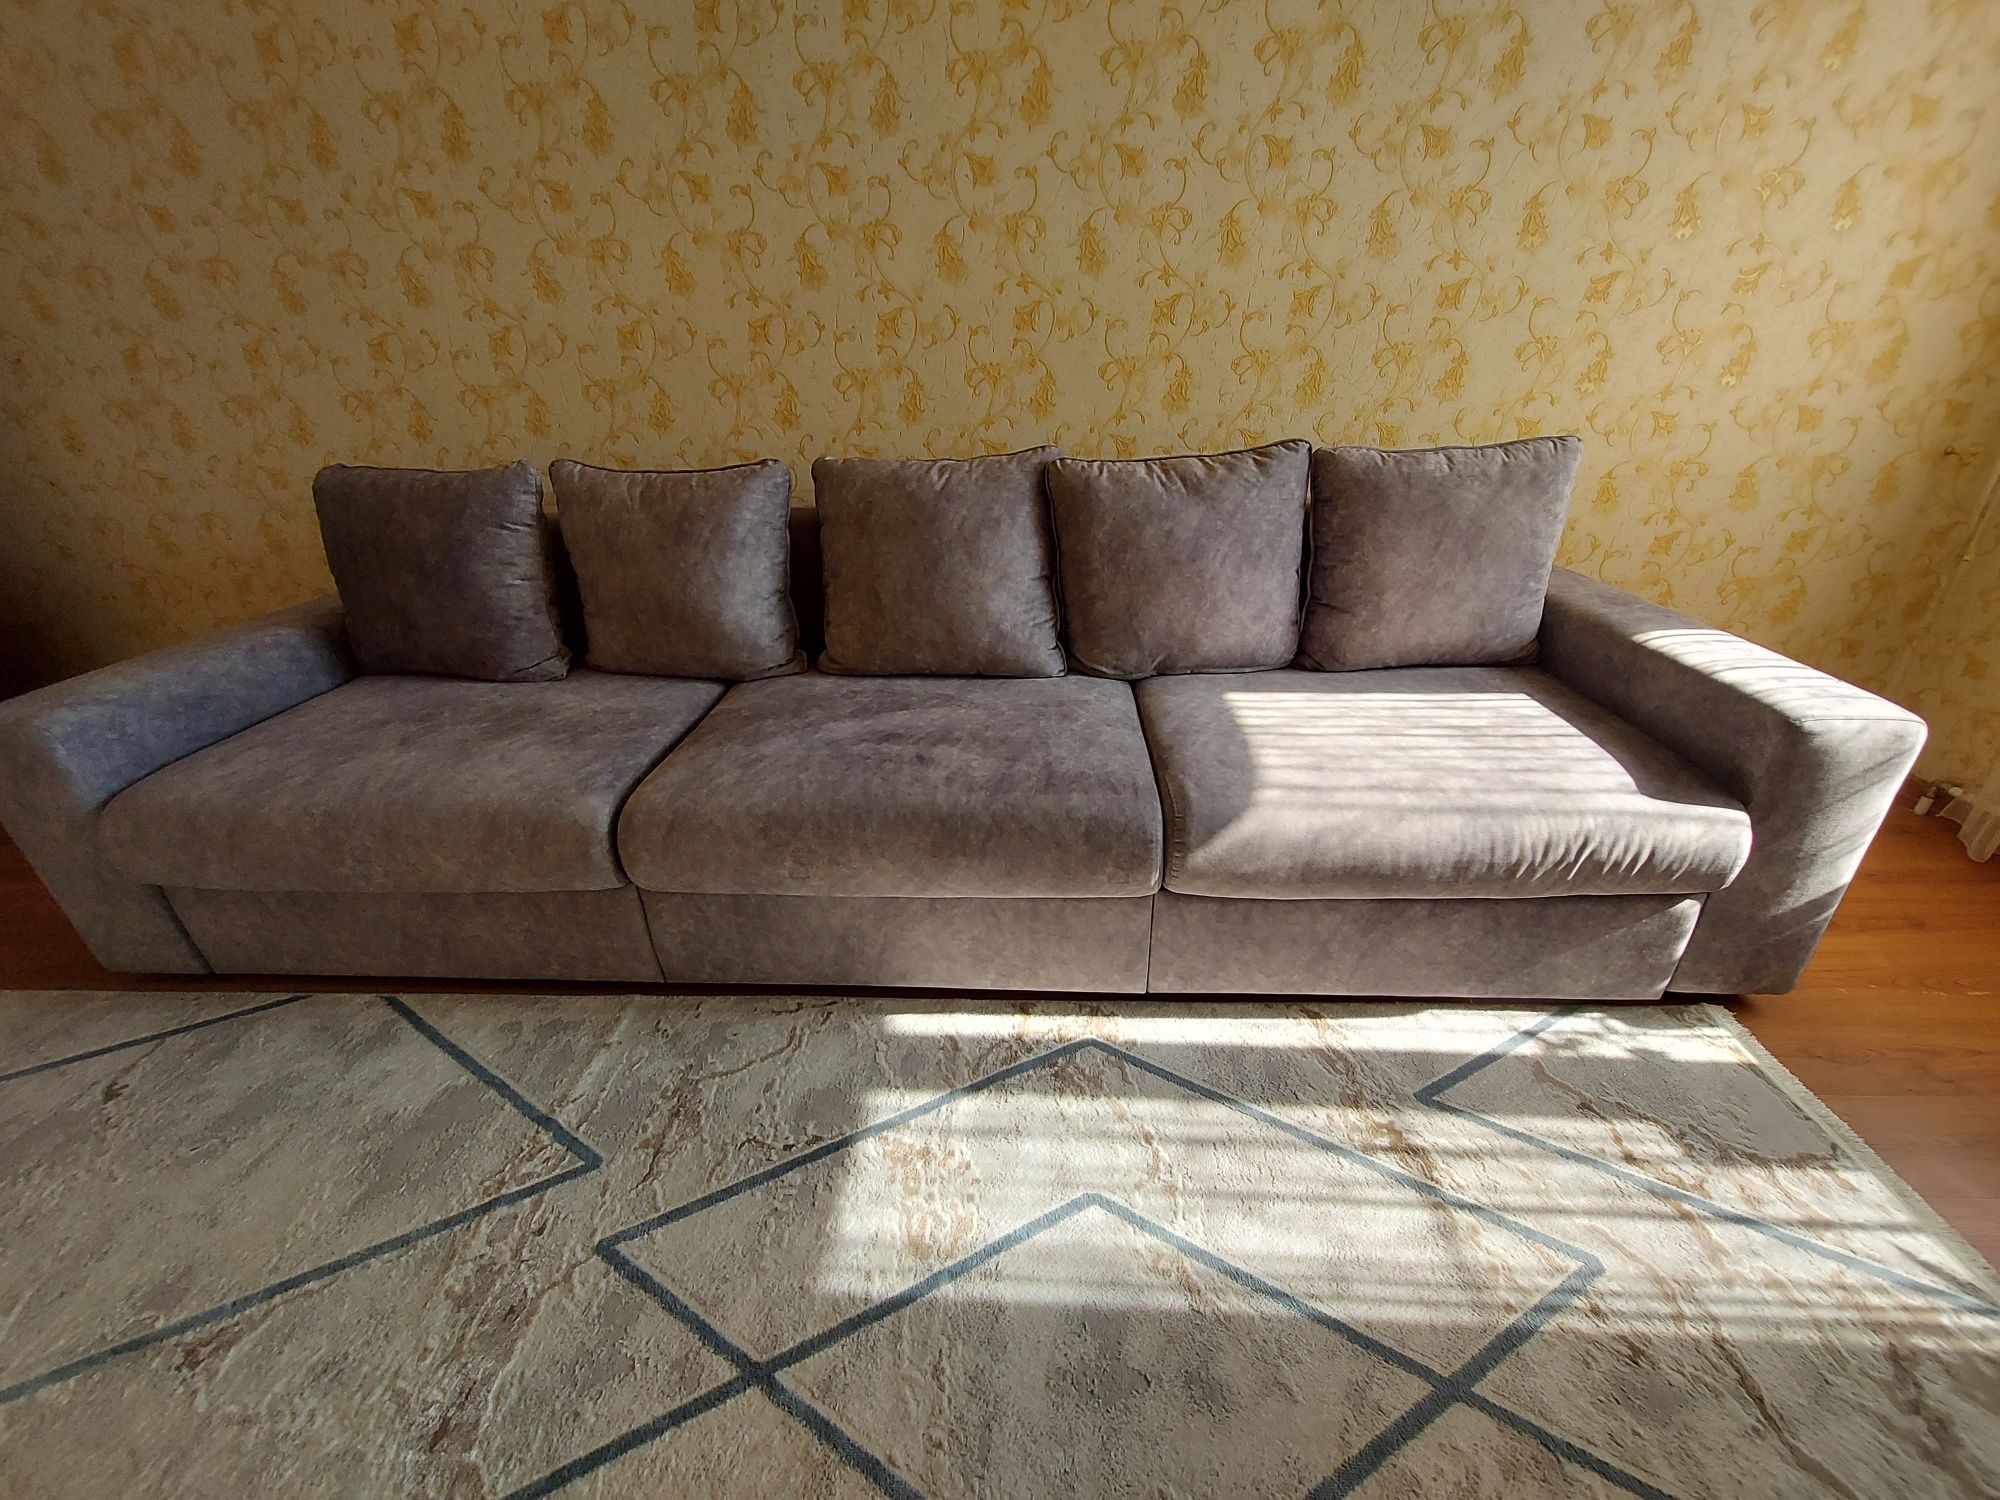 Продам диван 3,5 м,абсолютно чистый новый,пользовались пару месяцев